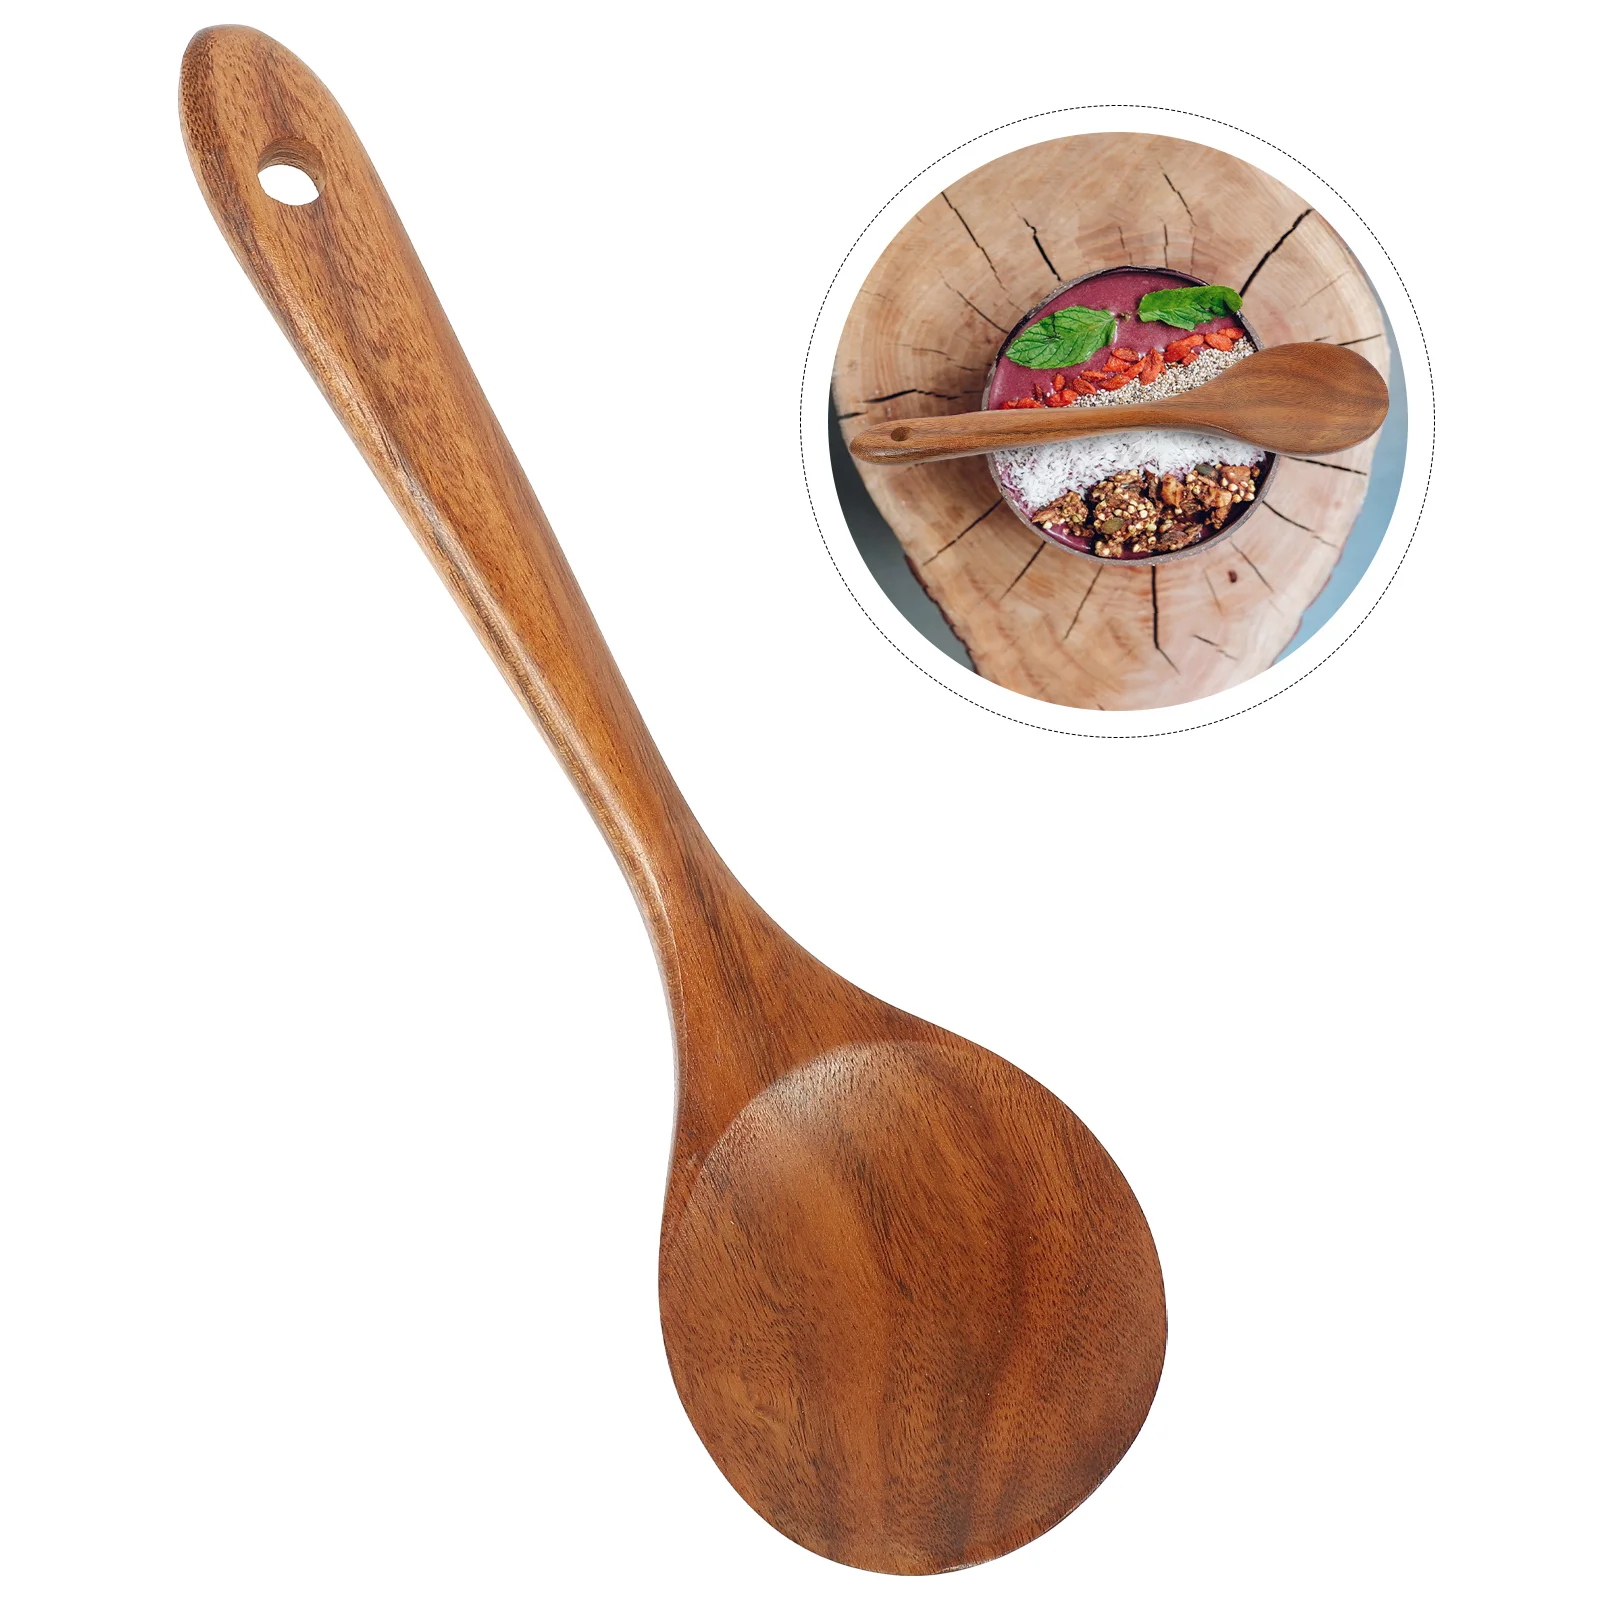 

Spoon Wooden Soup Ladle Wood Salad Stirring Serving Honey Mixing Cookinghandle Scoop Porridge Natural Utensils Rice Teaspoon